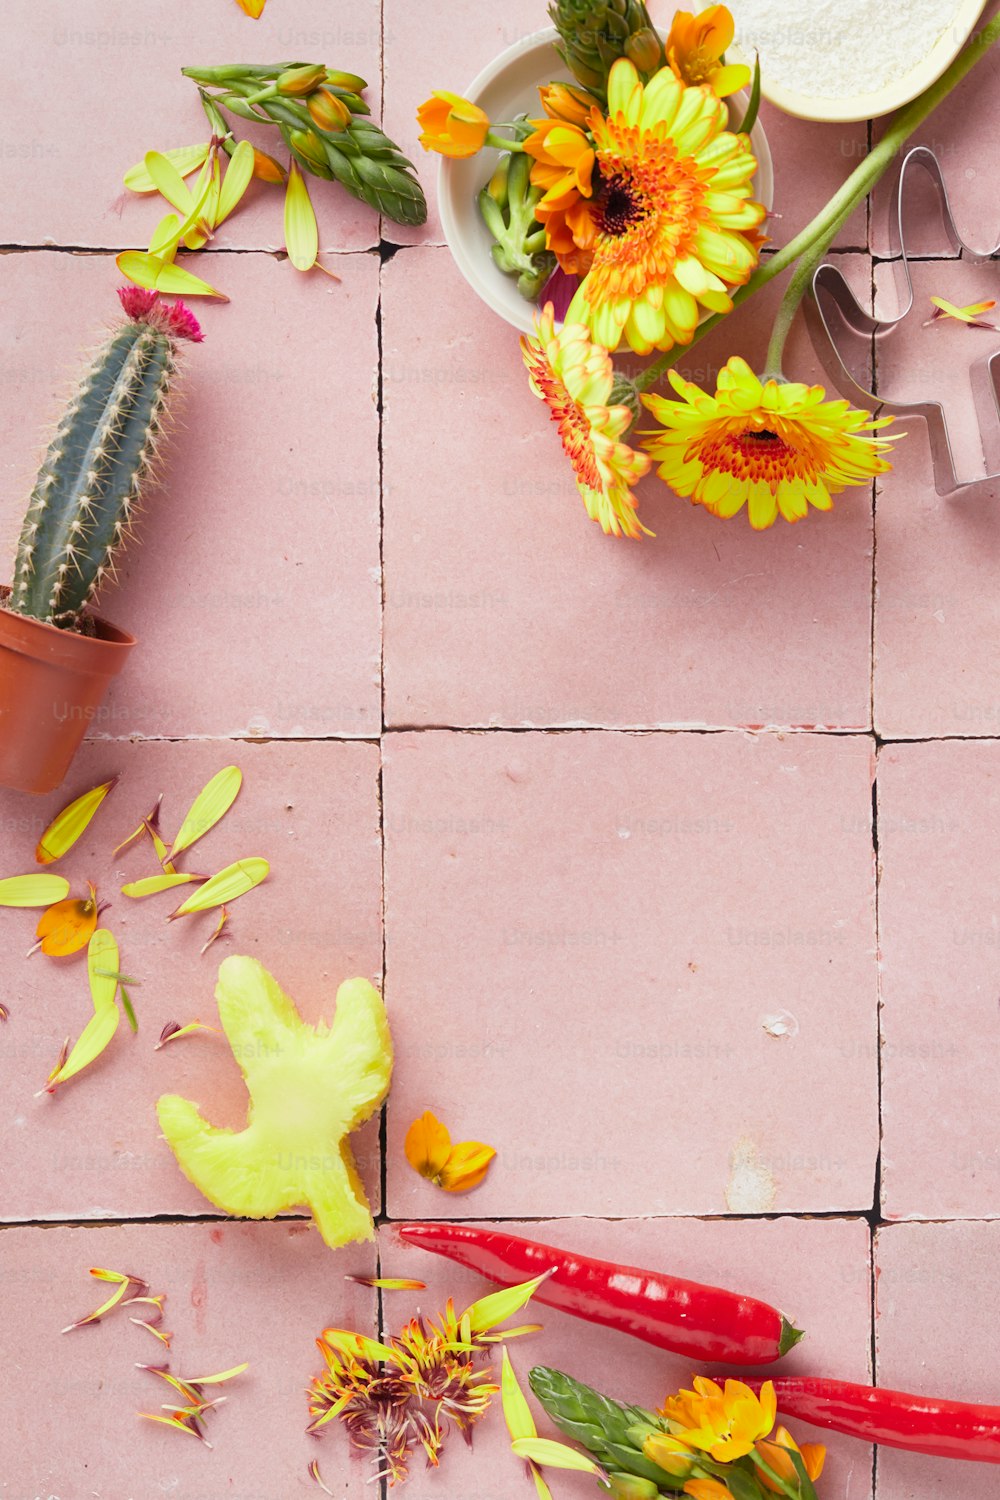 un sol carrelé rose avec des fleurs et des ciseaux dessus